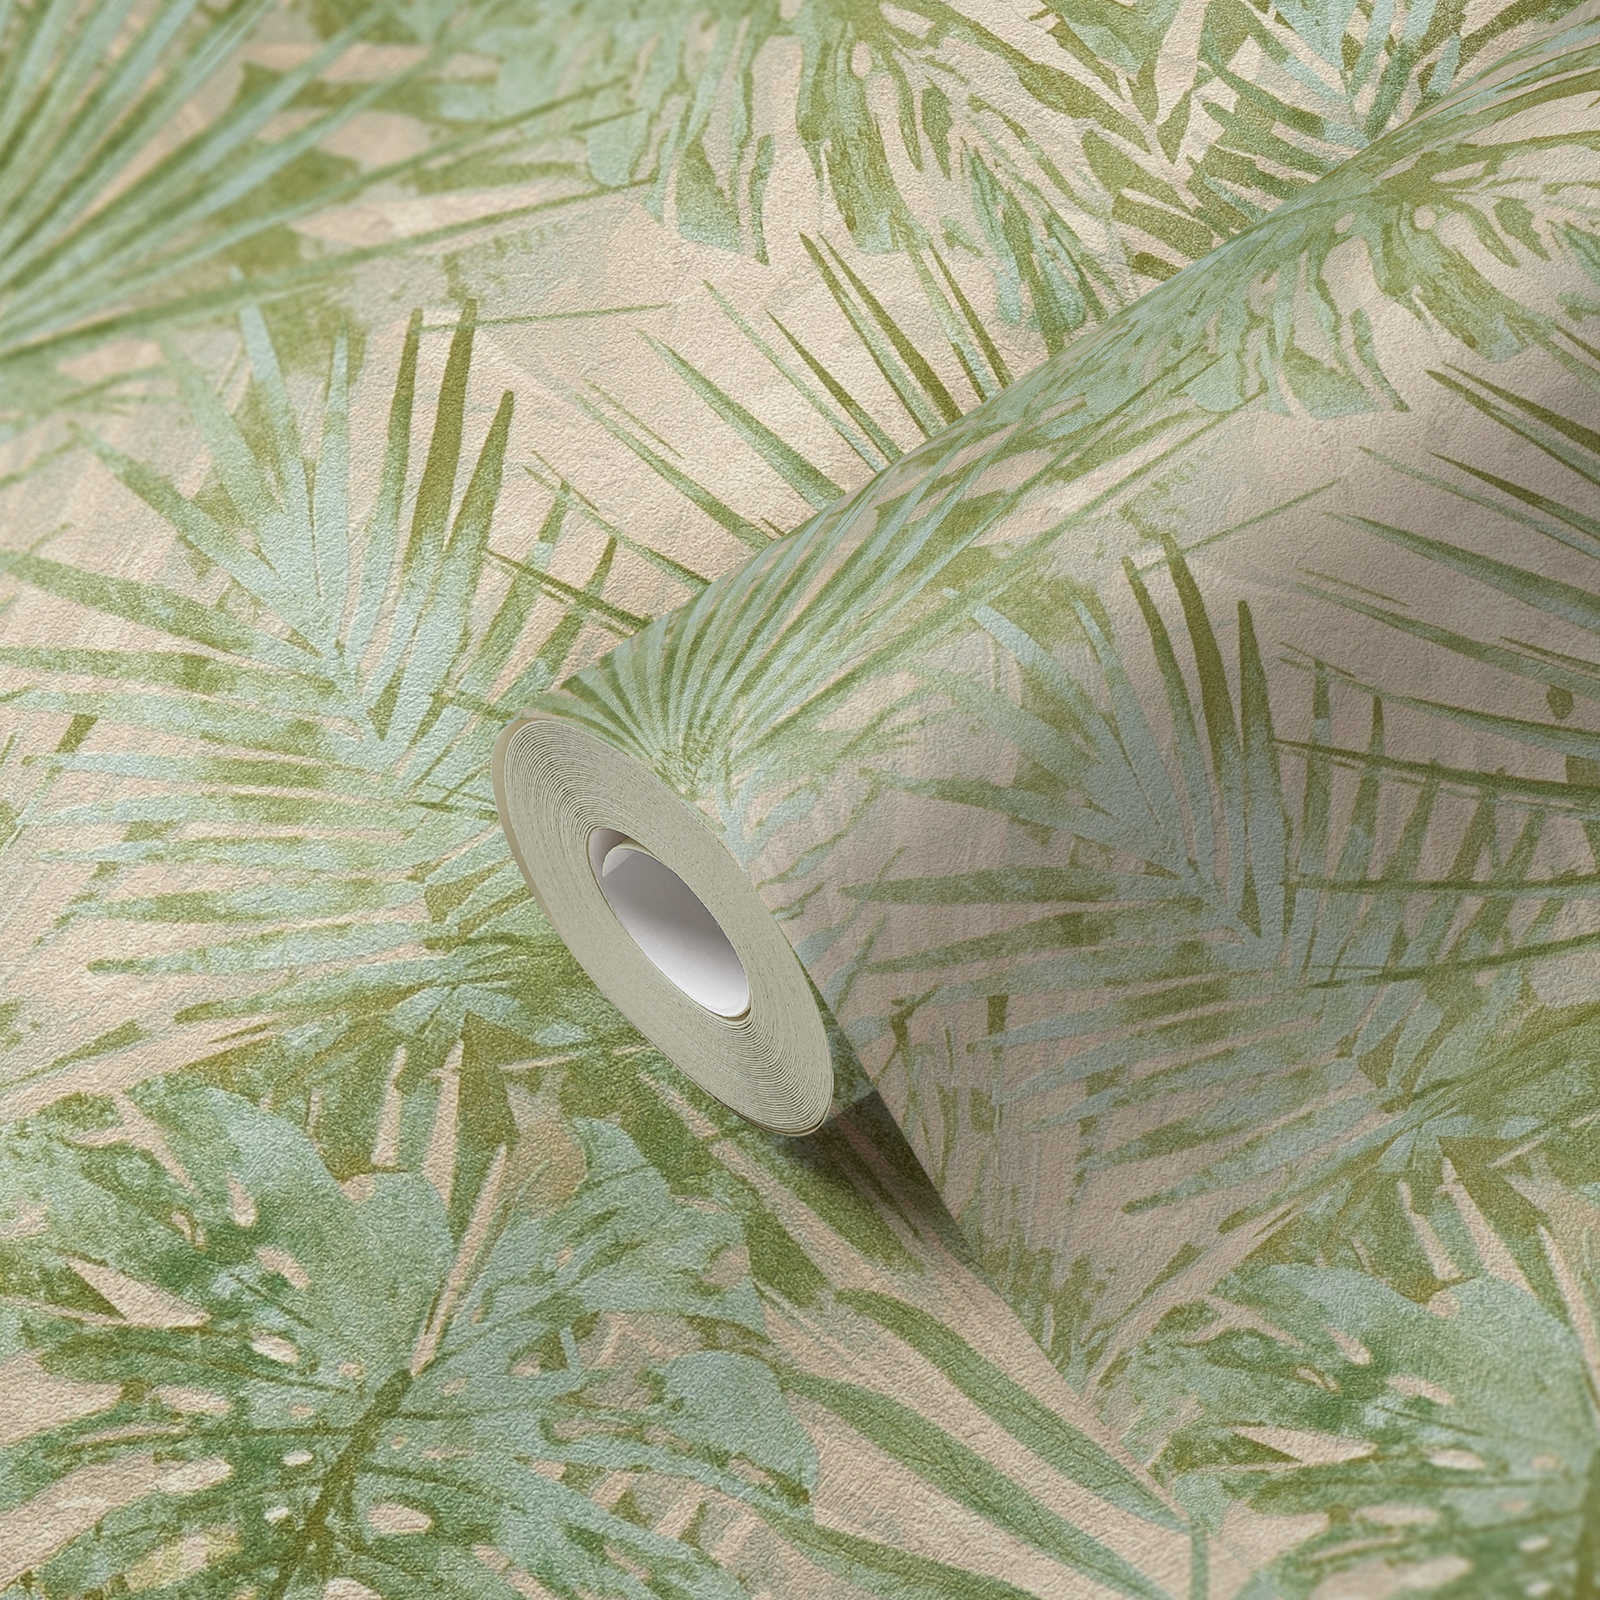             Vliestapete mit Dschungelblättern PVC-frei – Grün, Beige
        